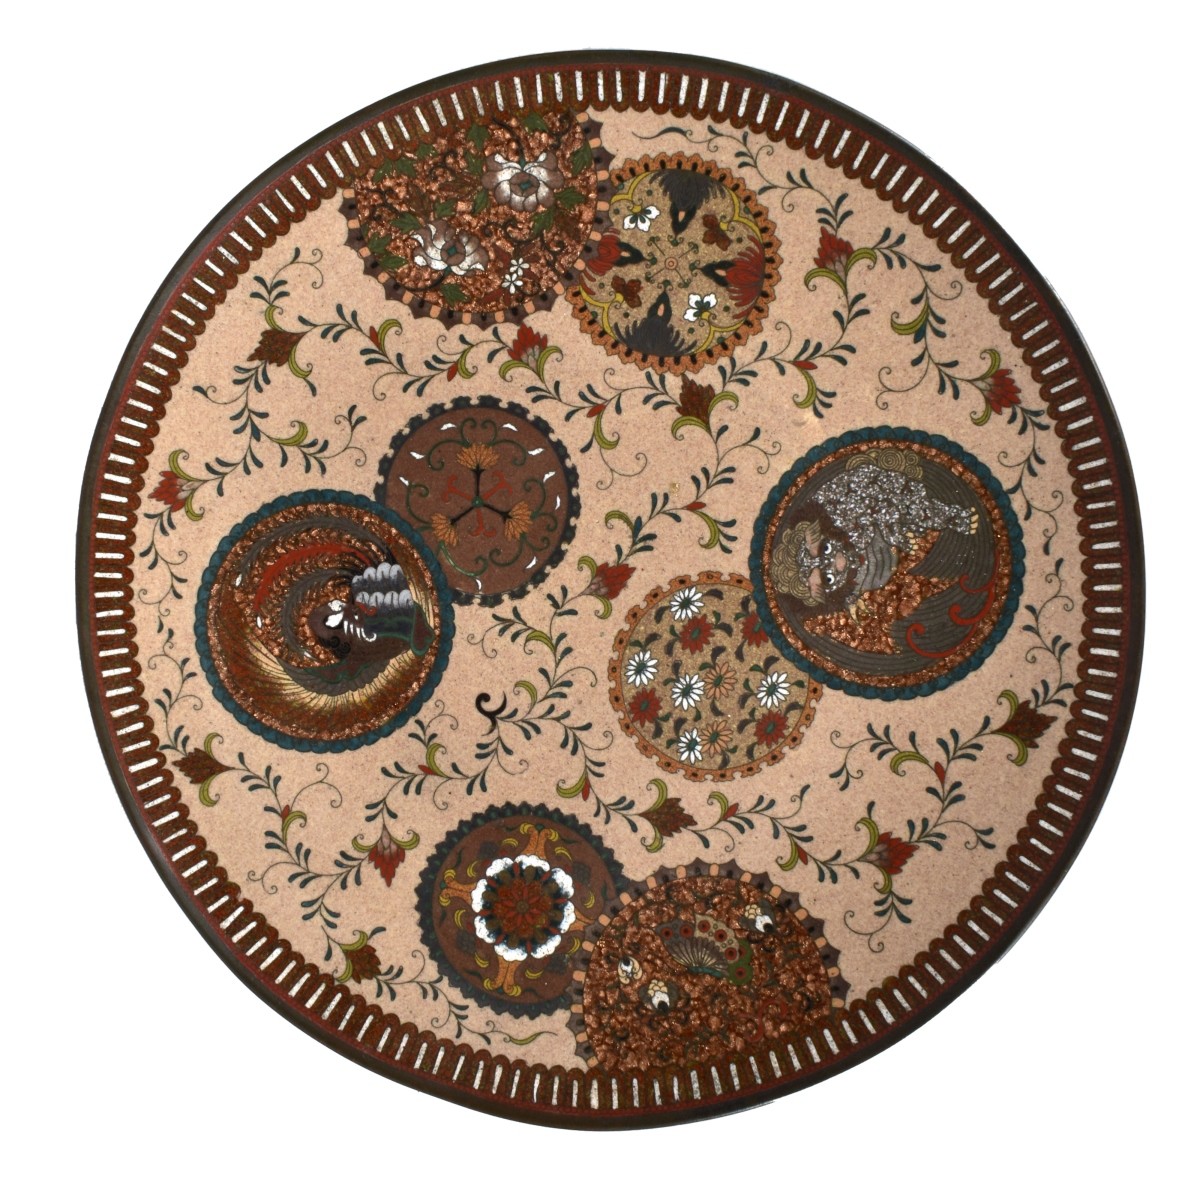 Antique Japanese Cloisonne Plate